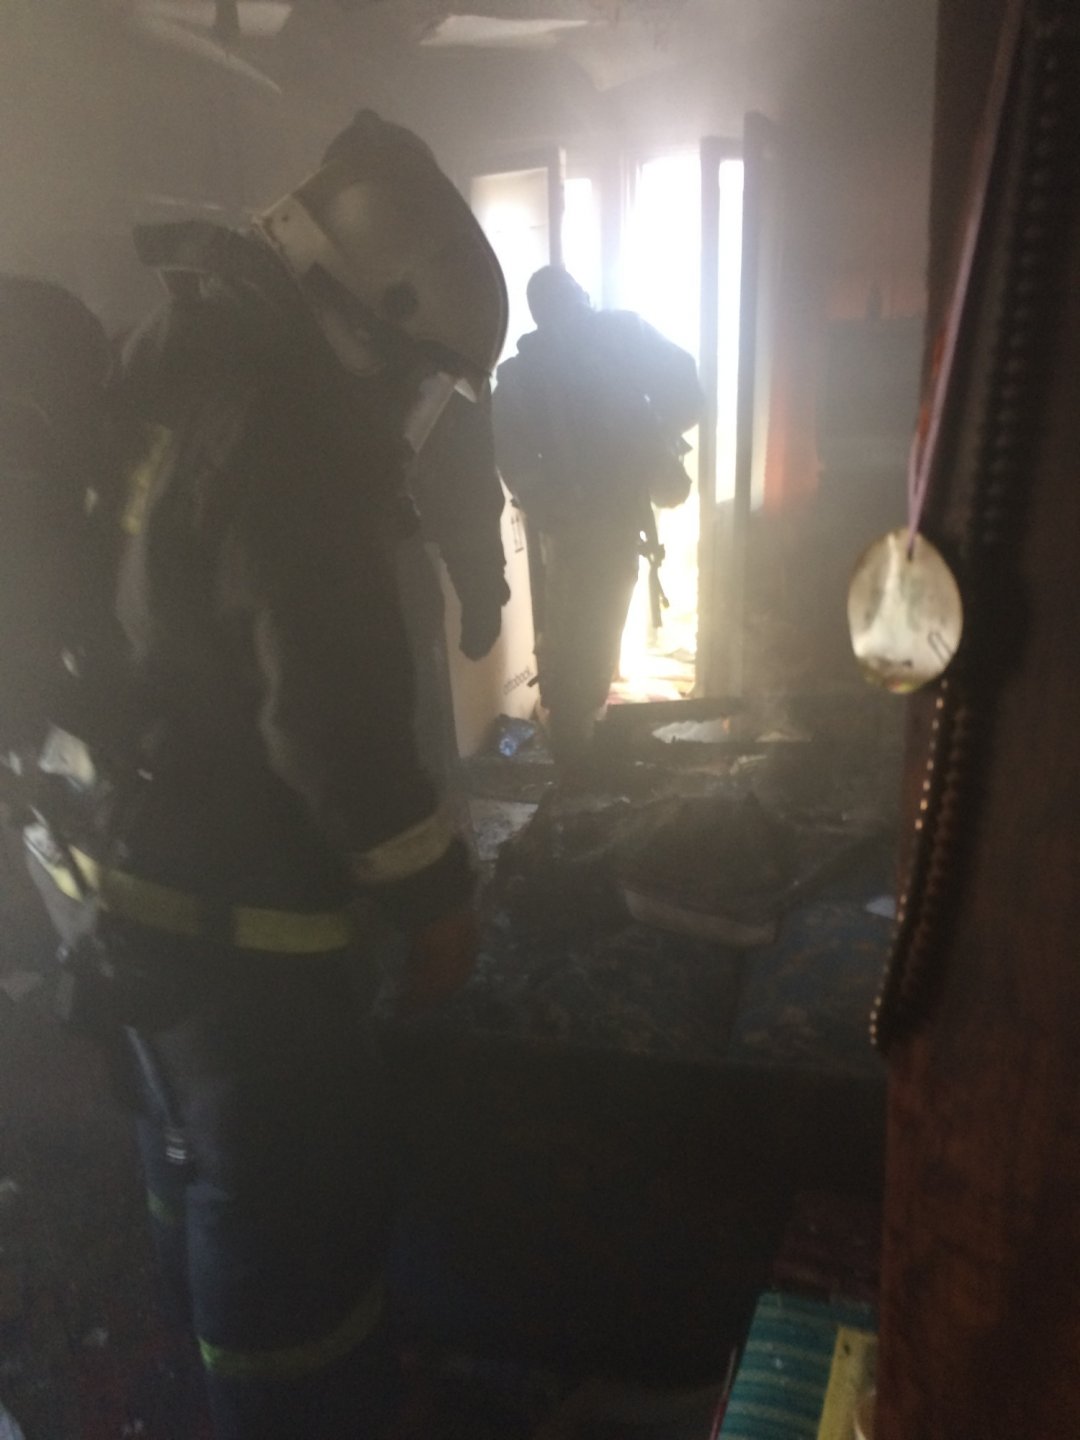 Пожарно-спасательные подразделения ликвидировали пожар в Беломорском районе.